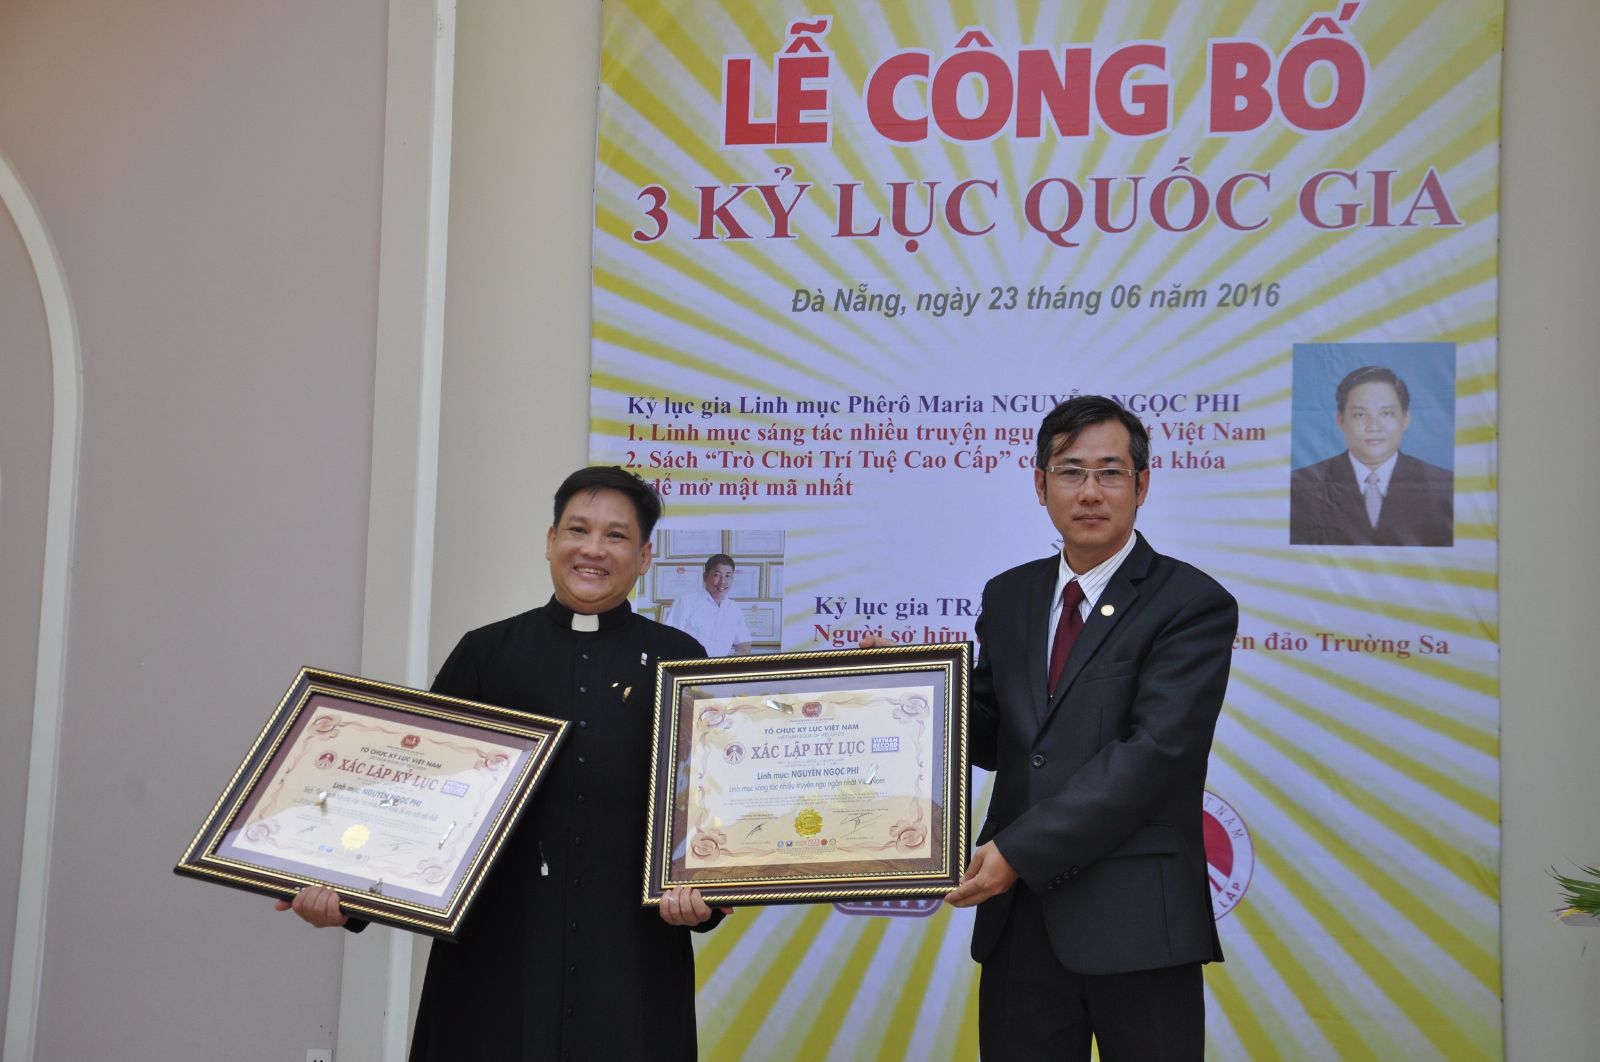 Linh mục Phêrô Maria Nguyễn Ngọc Phi (trái ảnh) - Người đã xác lập 3 kỷ lục quốc gia về sách